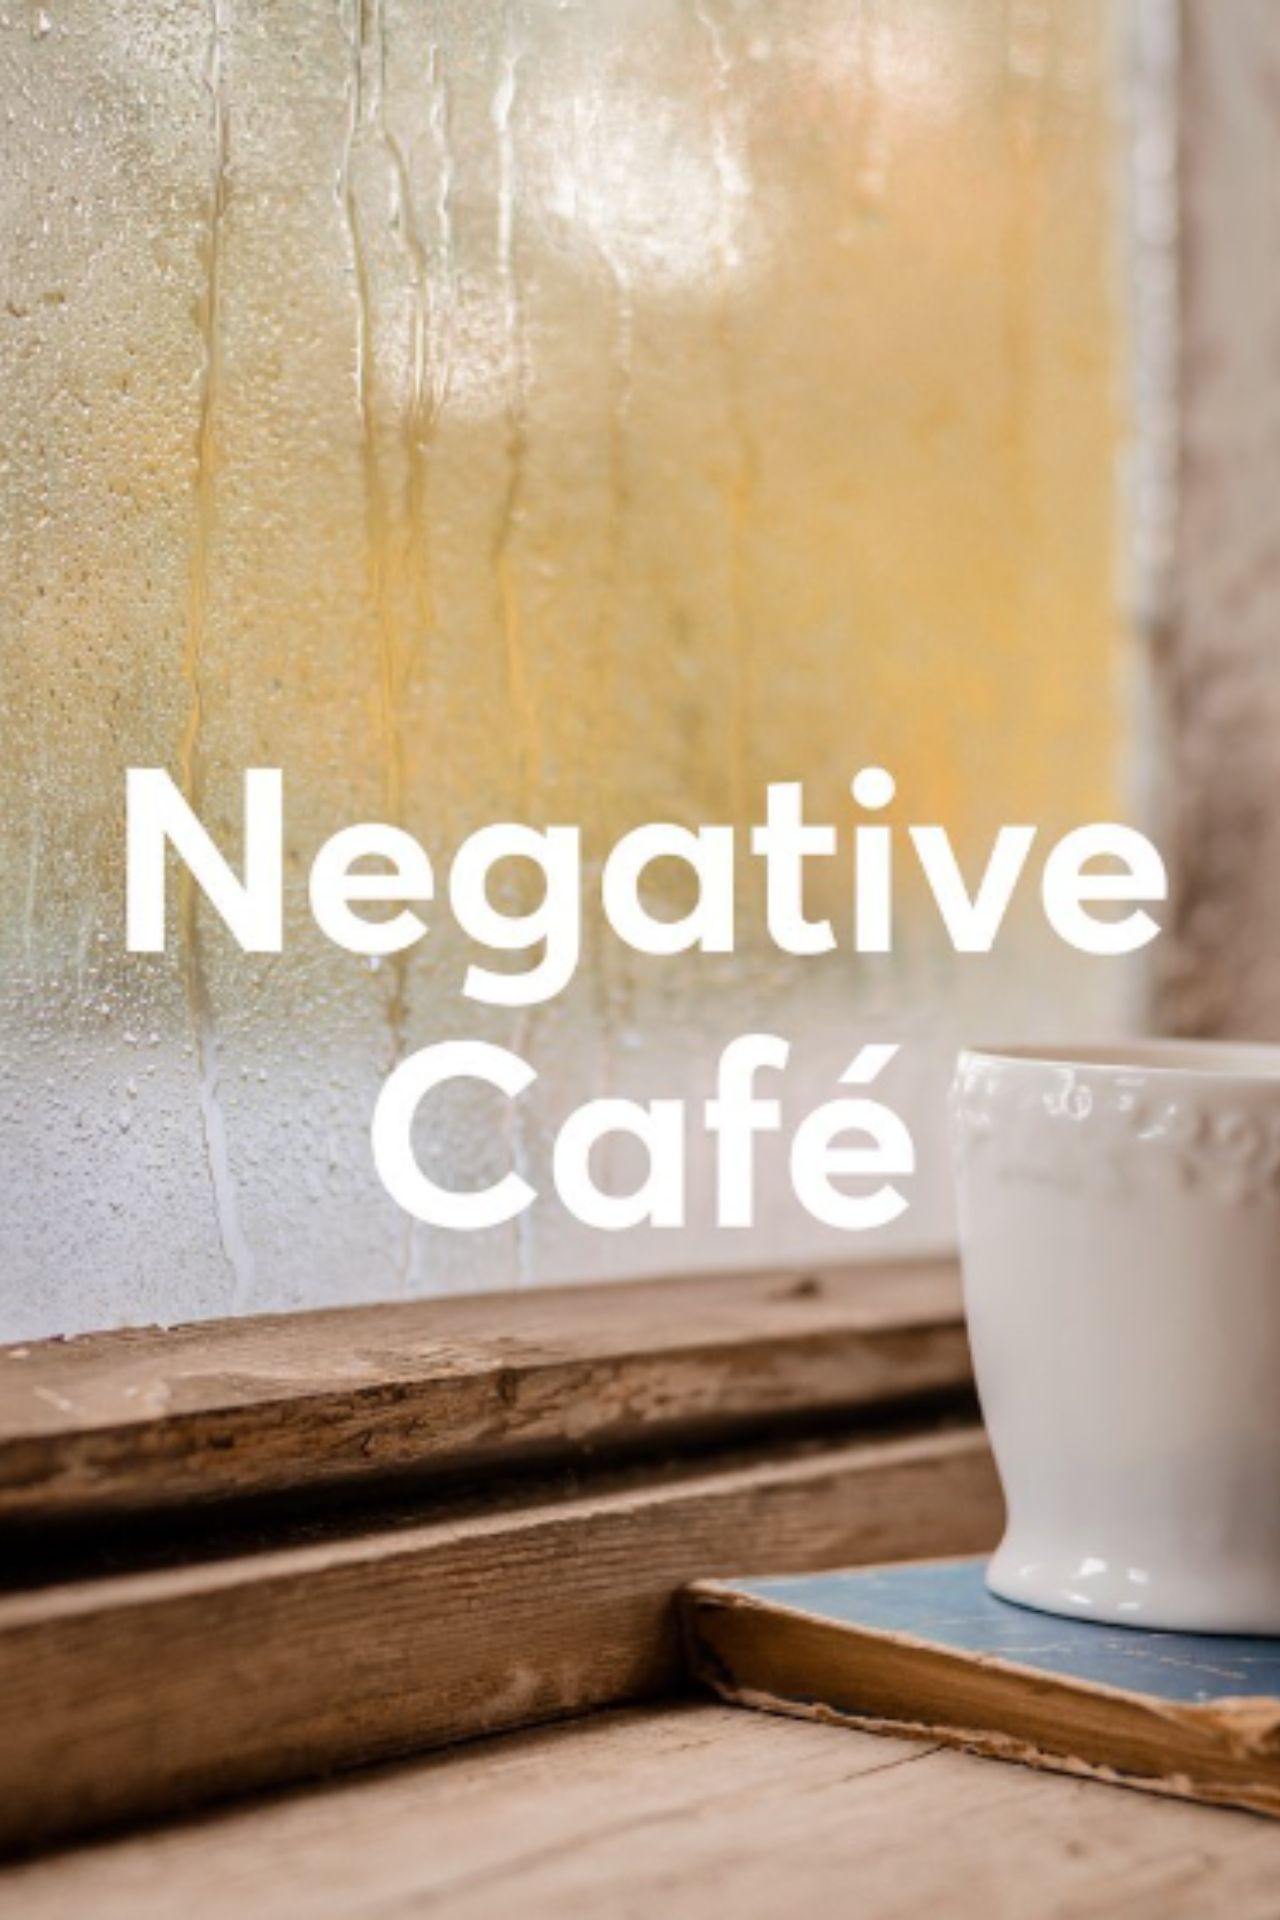 केवल 'Negative' लोगों के लिए बना है यह Cafe